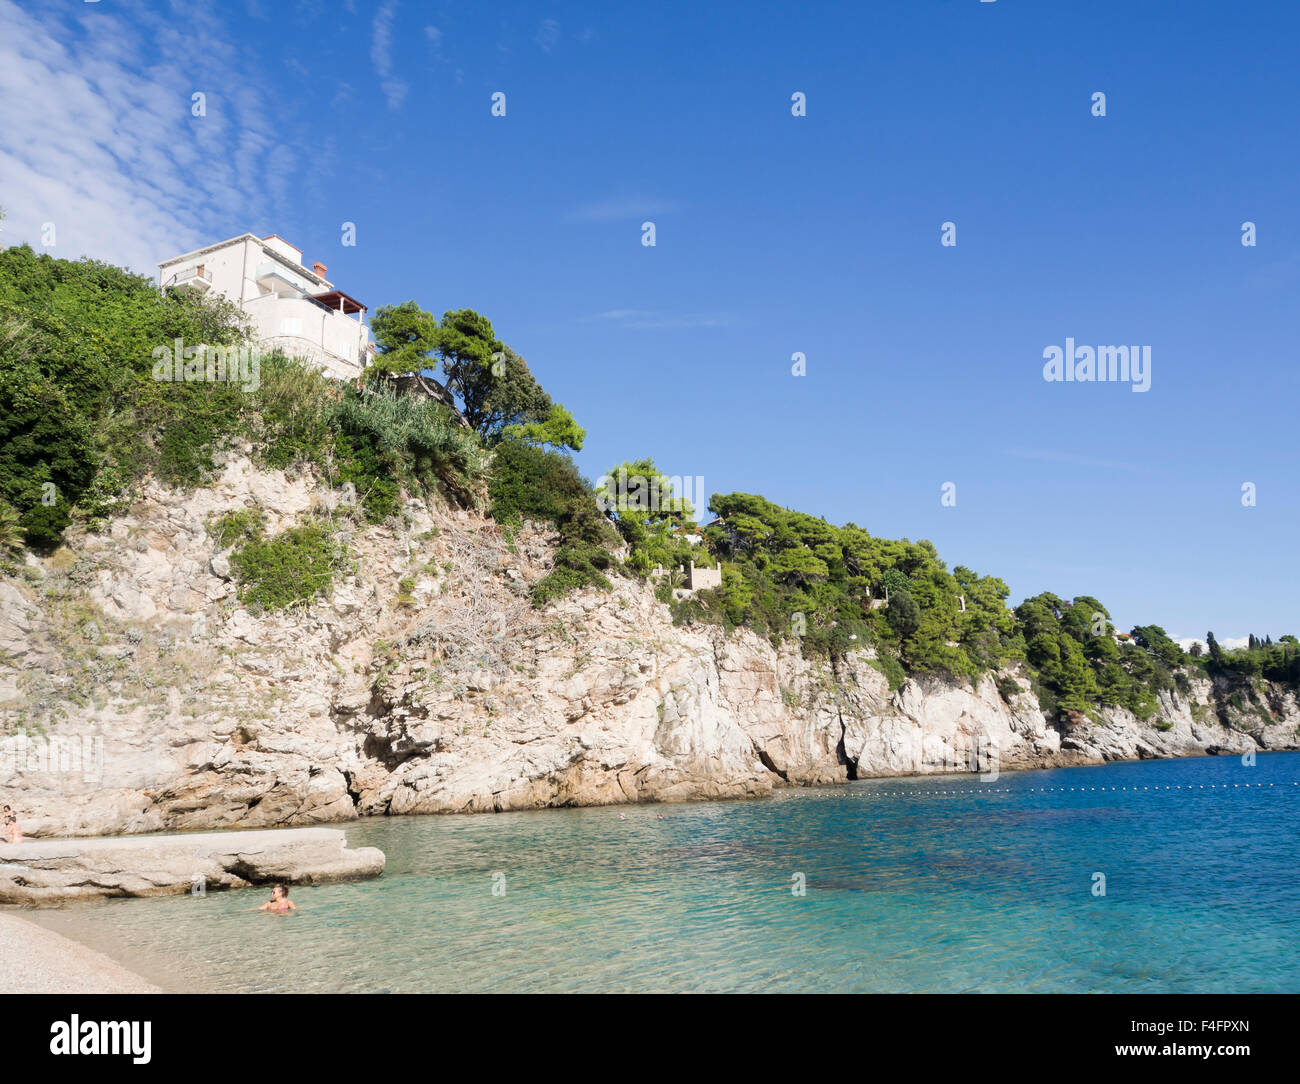 Eine kleine Bucht mit Kiesstrand und steilen Klippen, dalmatinische Küste bei seiner malerischsten Bellevue Dubrovnik Kroatien Stockfoto